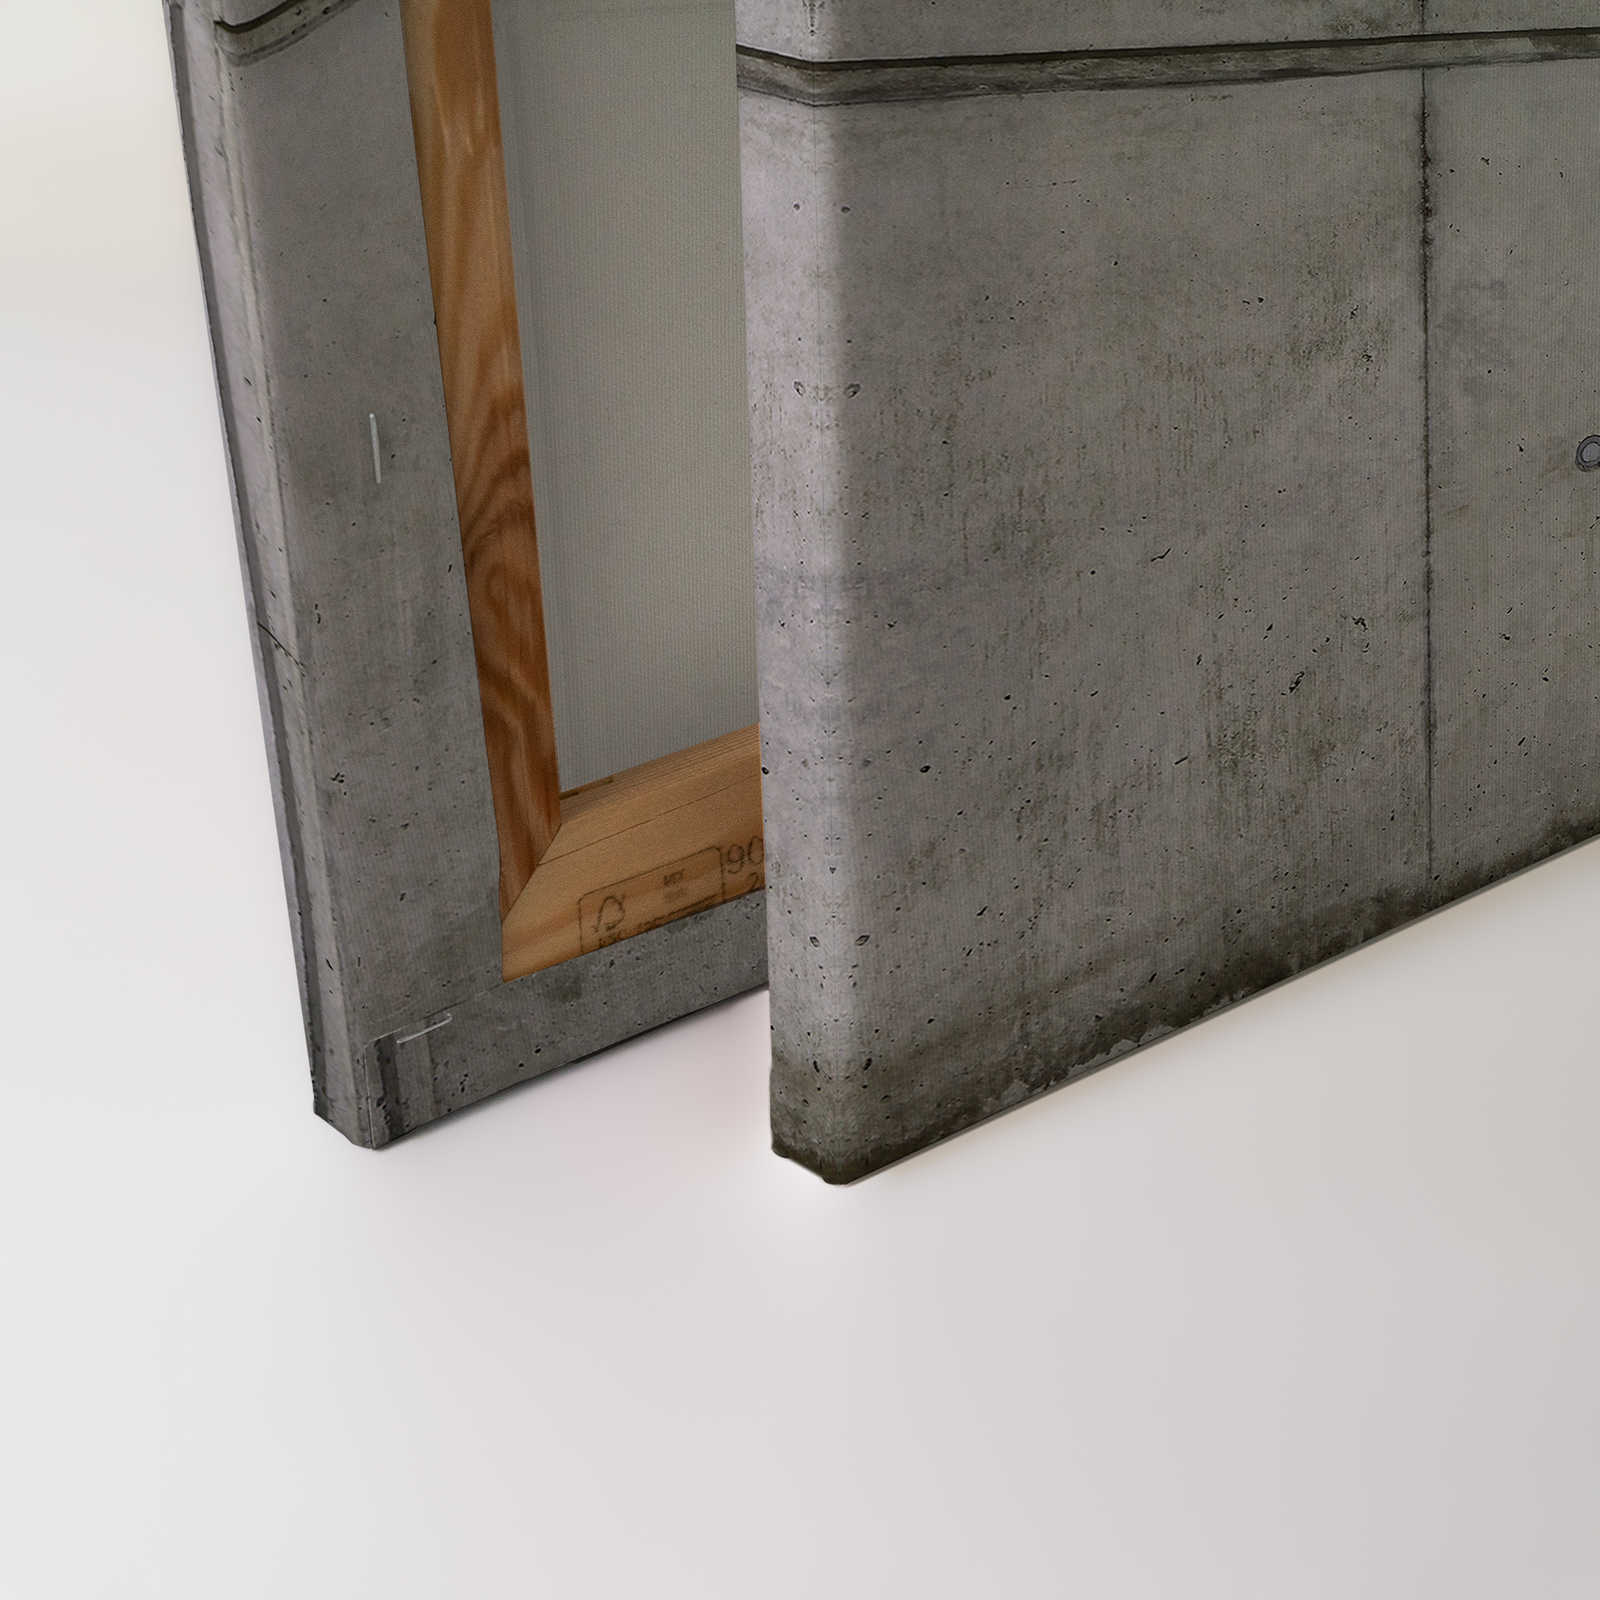             Lienzo pintura Bufanda concreto 3D look en usado - 1,20 m x 0,80 m
        